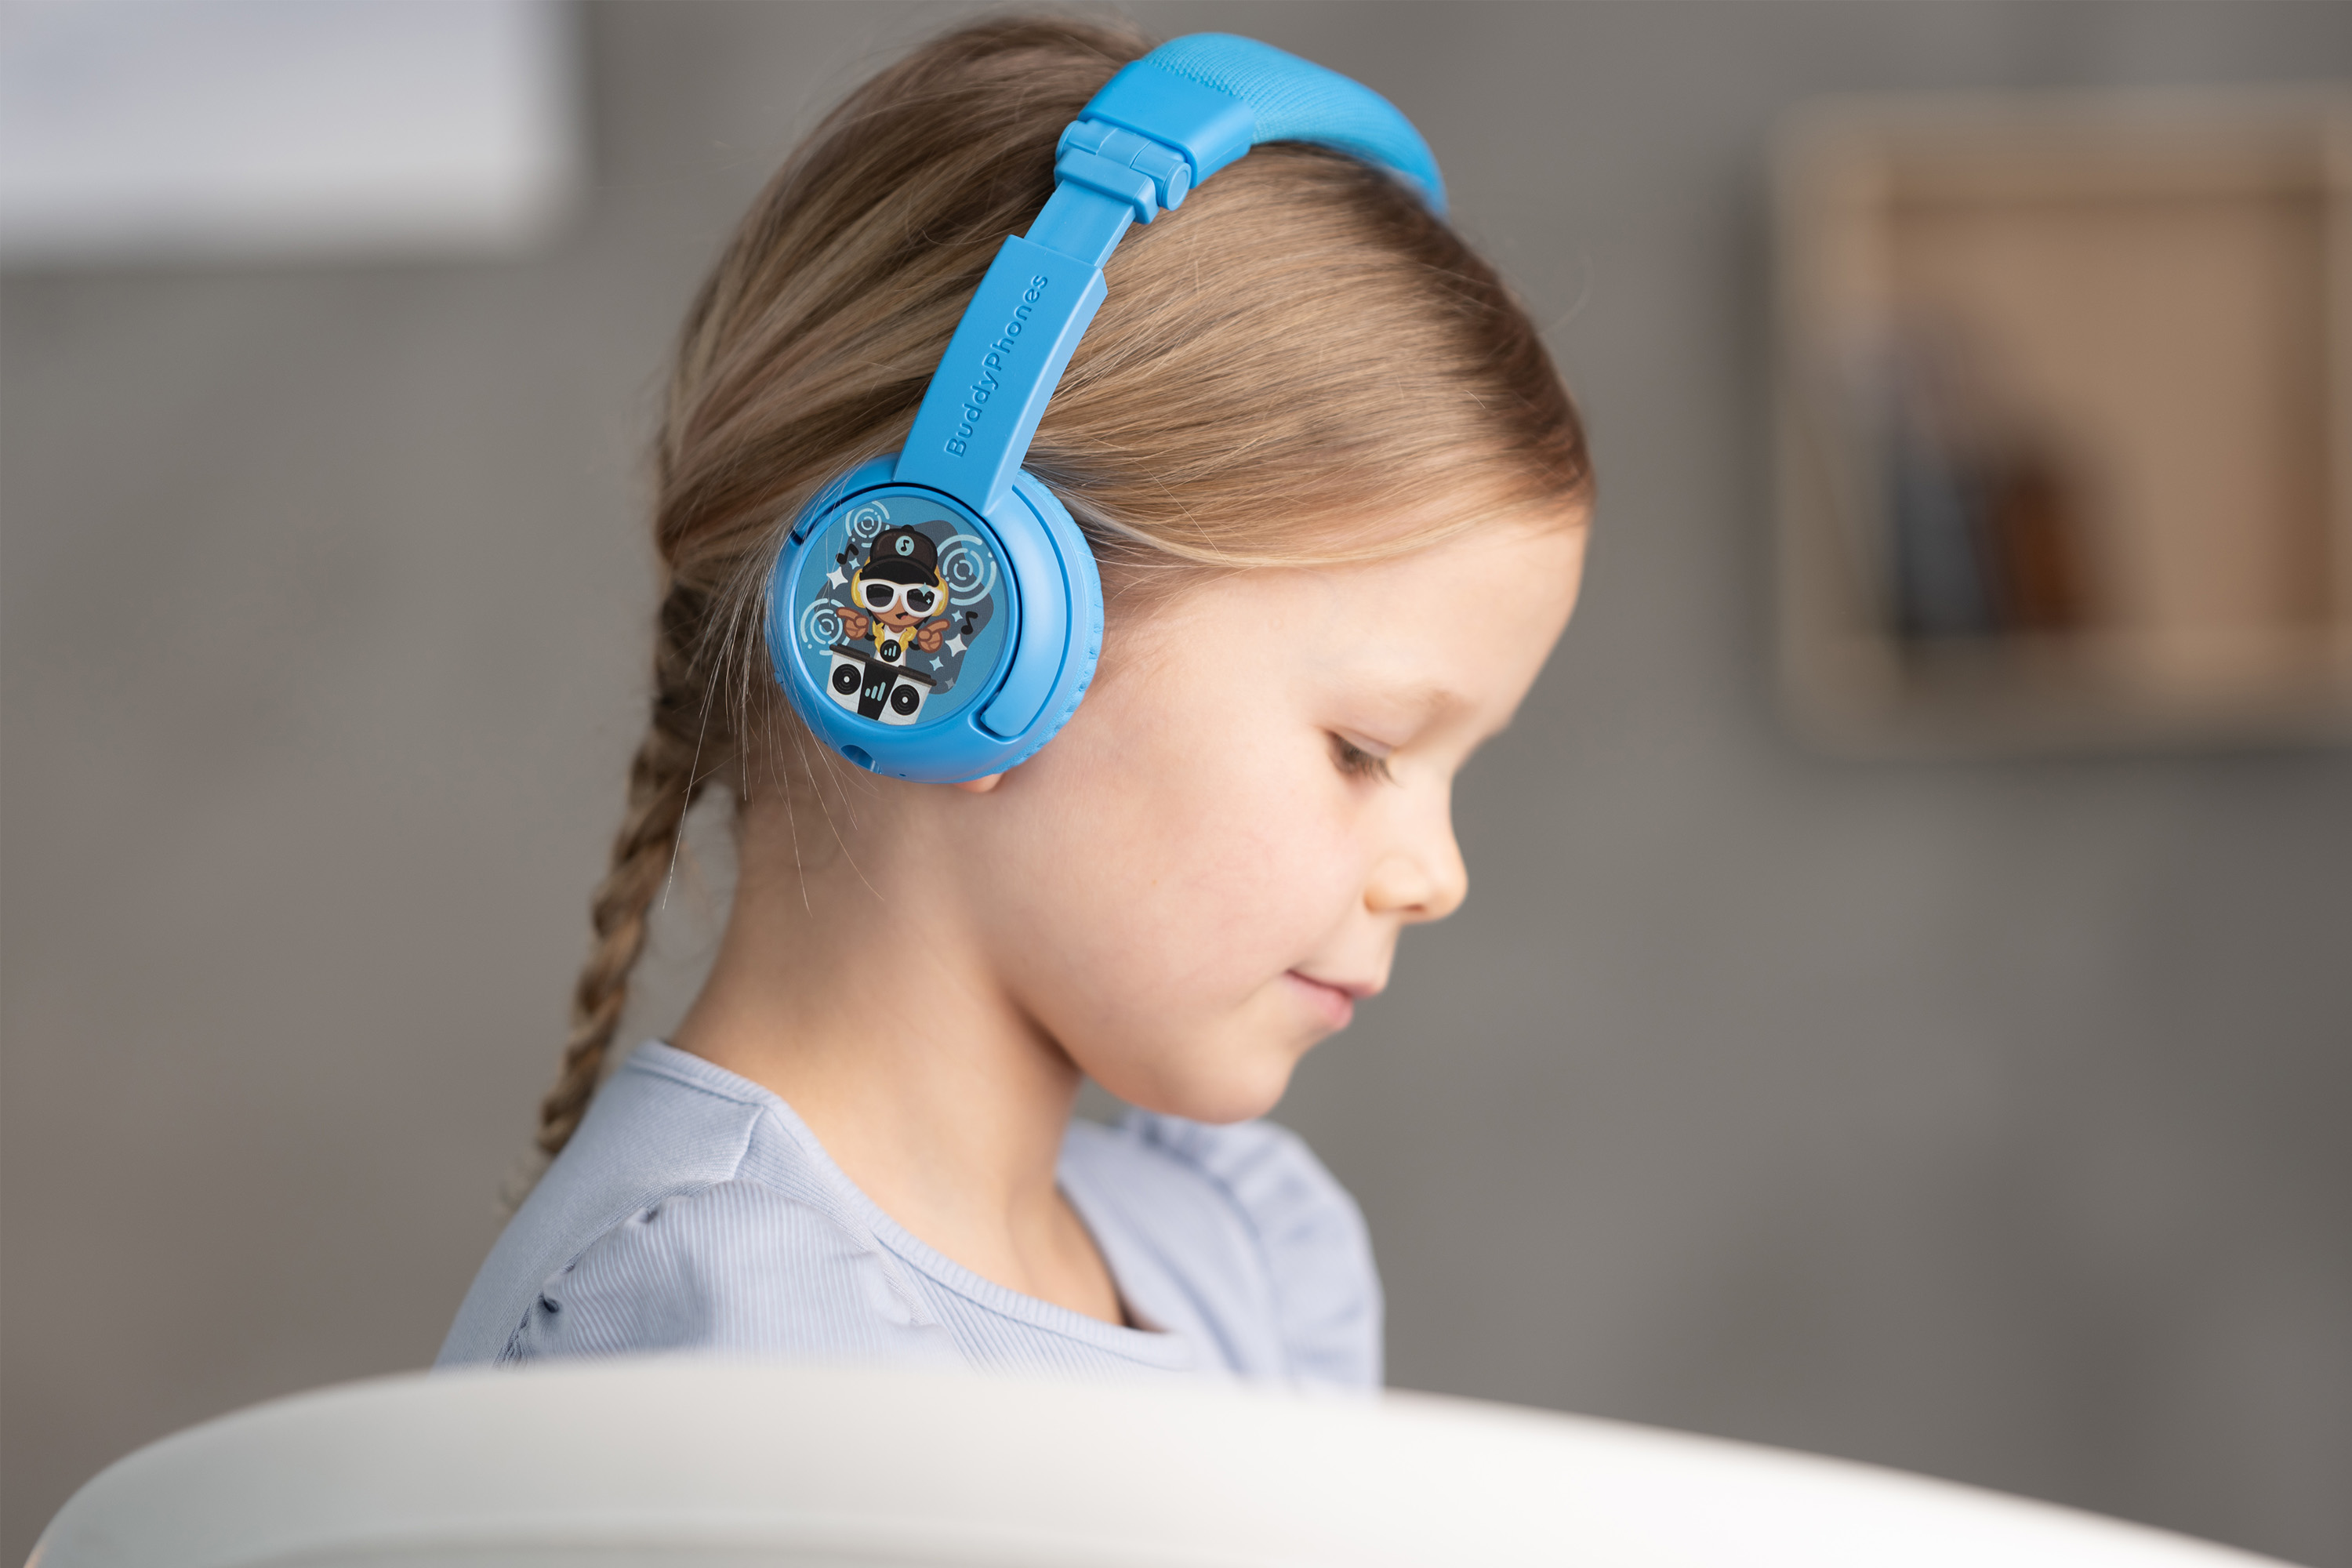 On-ear BUDDYPHONES Kinder Play Plus, Kopfhörer Grau Bluetooth